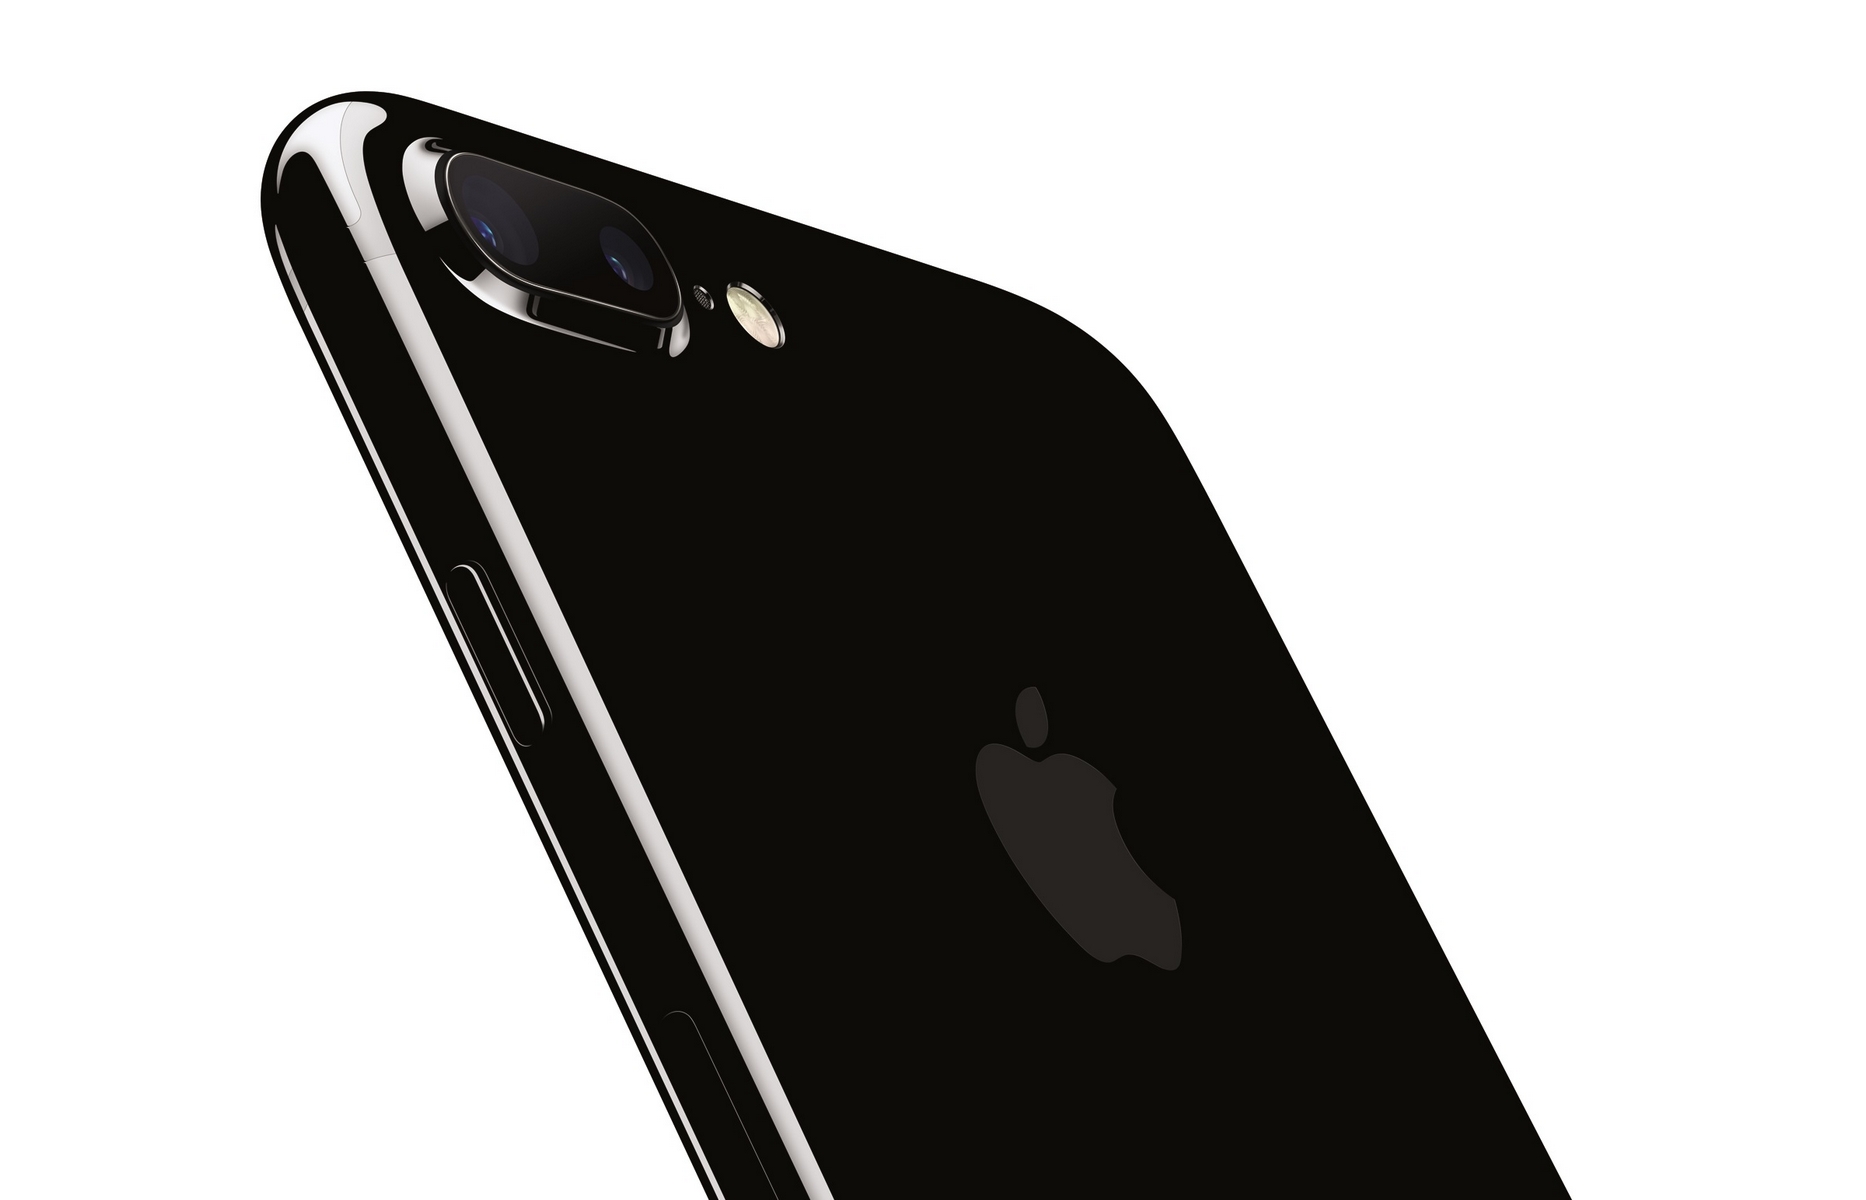 Accessori iPhone 7 Plus in offerta oggi 23 marzo: c'è anche la cover batteria da 7500 mAh